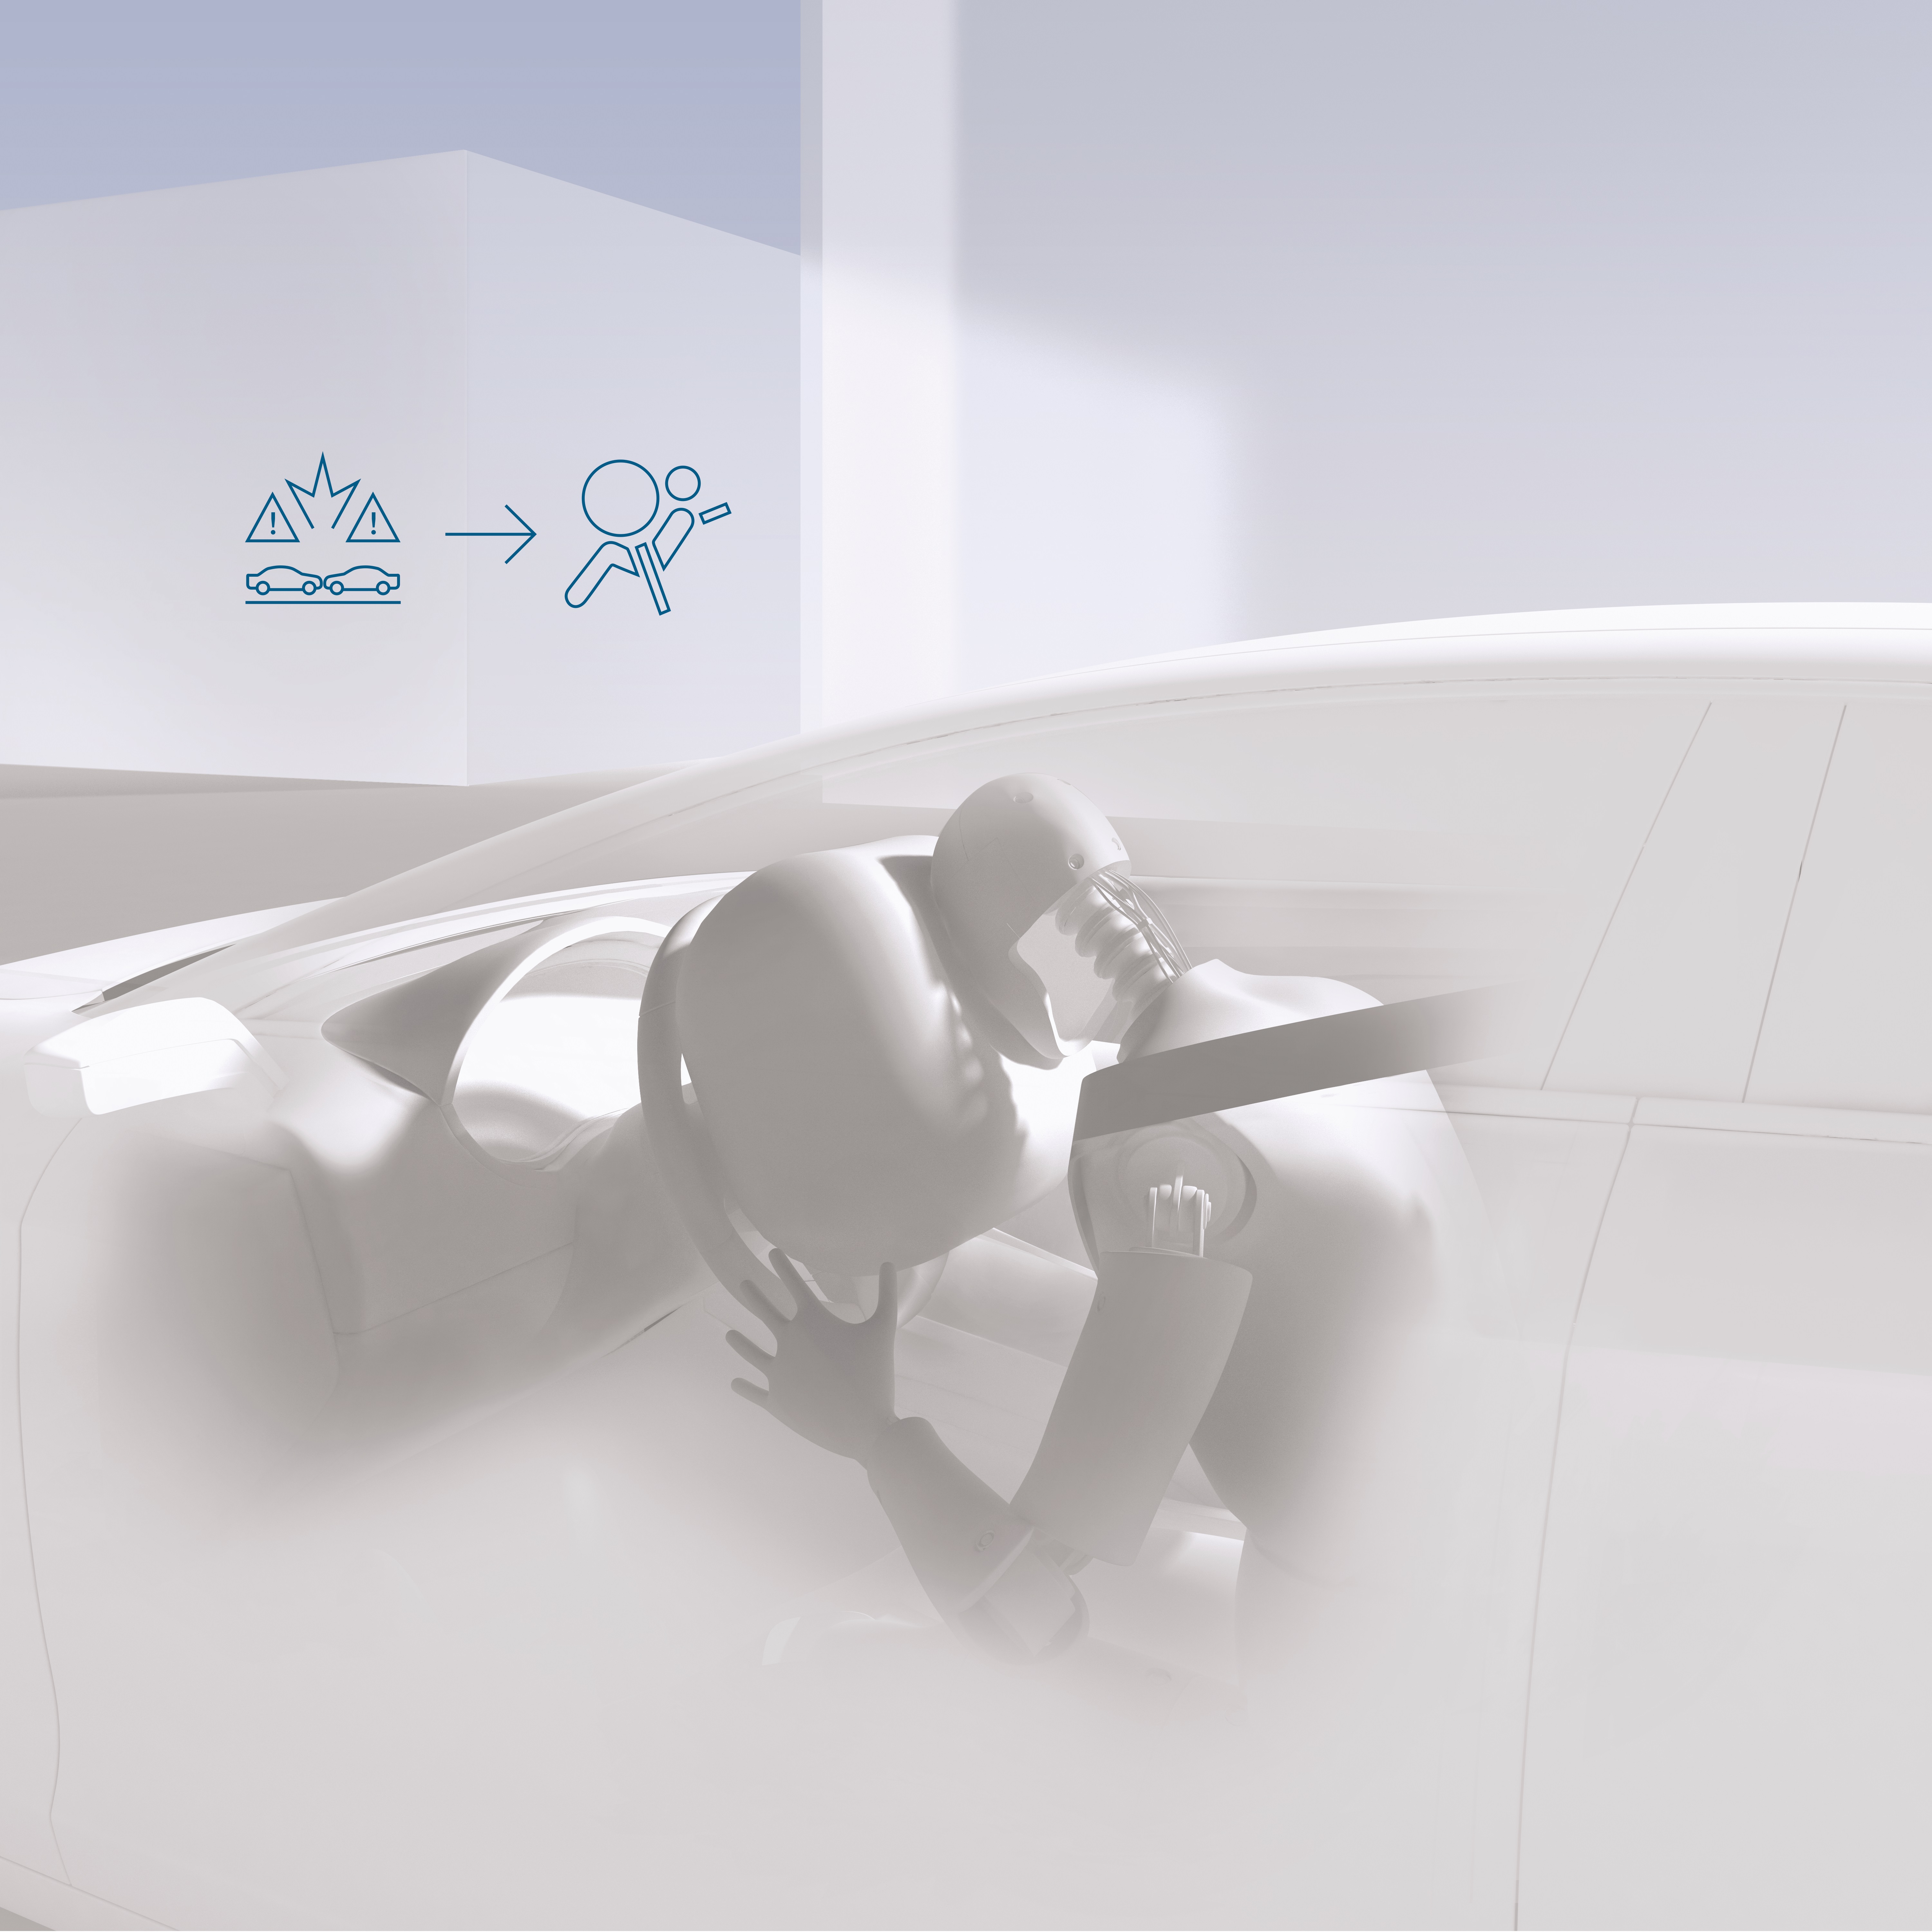 L’innovazione nella protezione passeggeri:  40 anni fa Bosch lanciava la centralina elettronica airbag per le autovetture